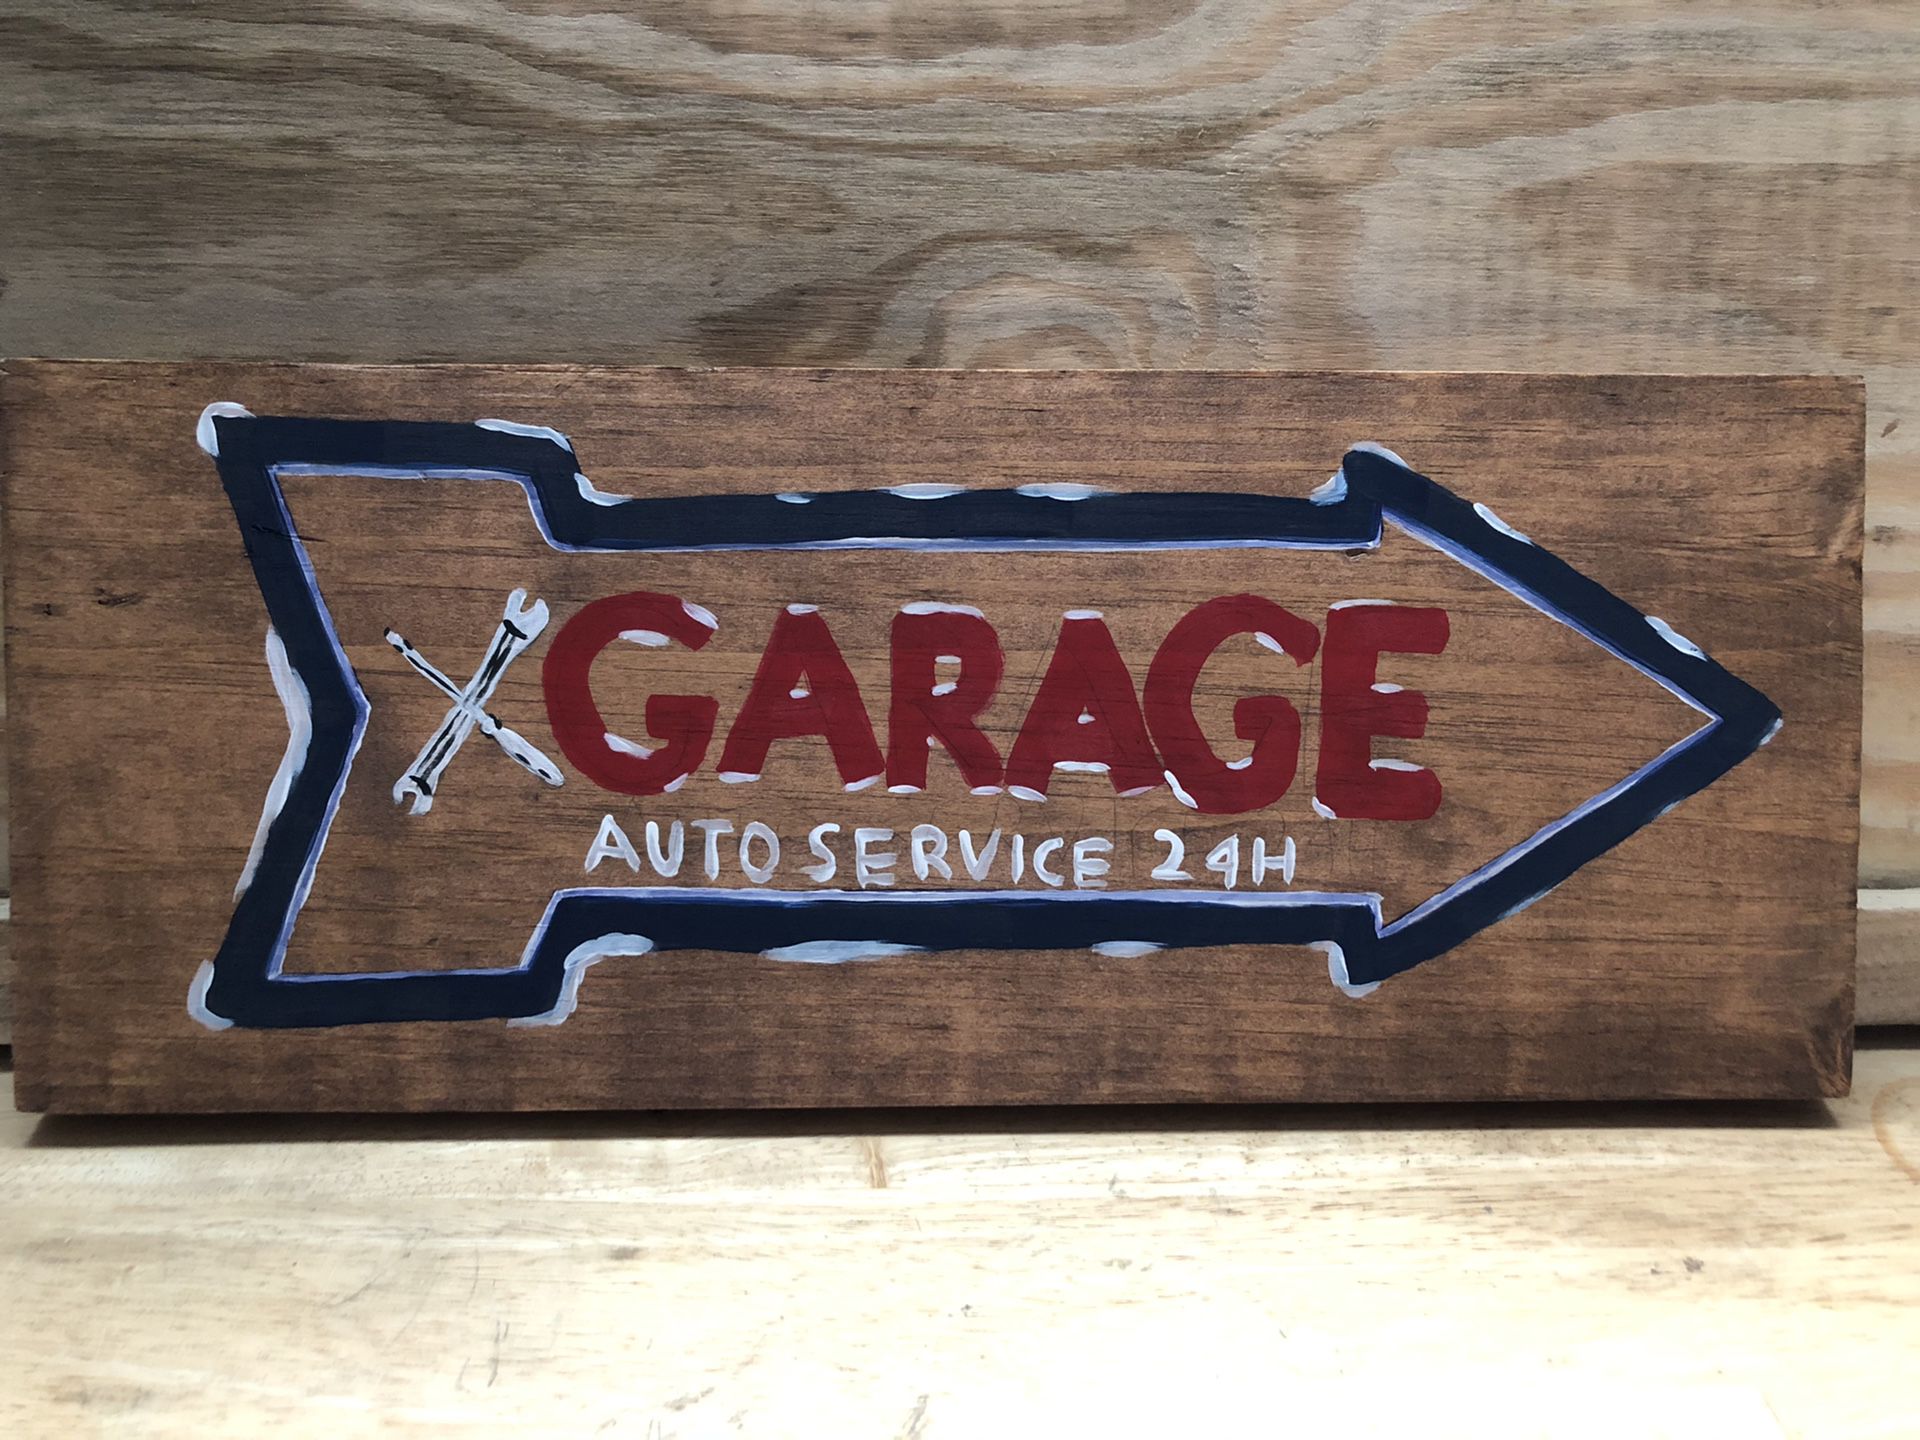 Handmade Garage auto repair sign